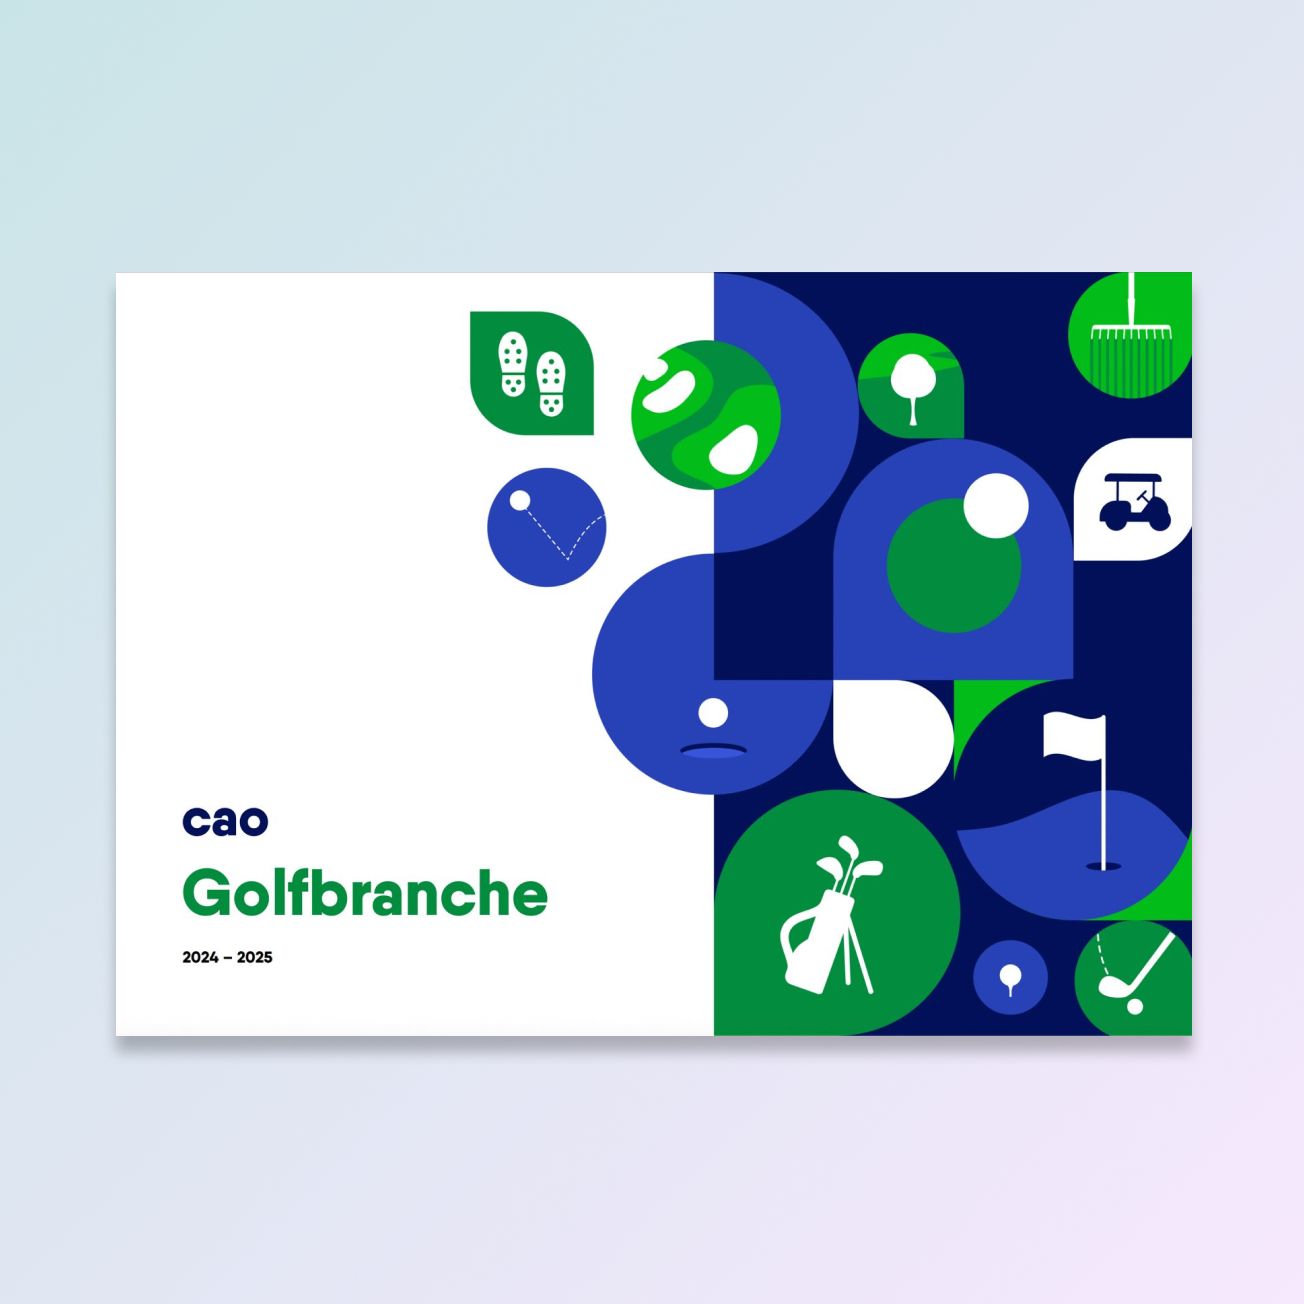 cover cao golfbranche, met kleine golf-gerelateerde iconen erop